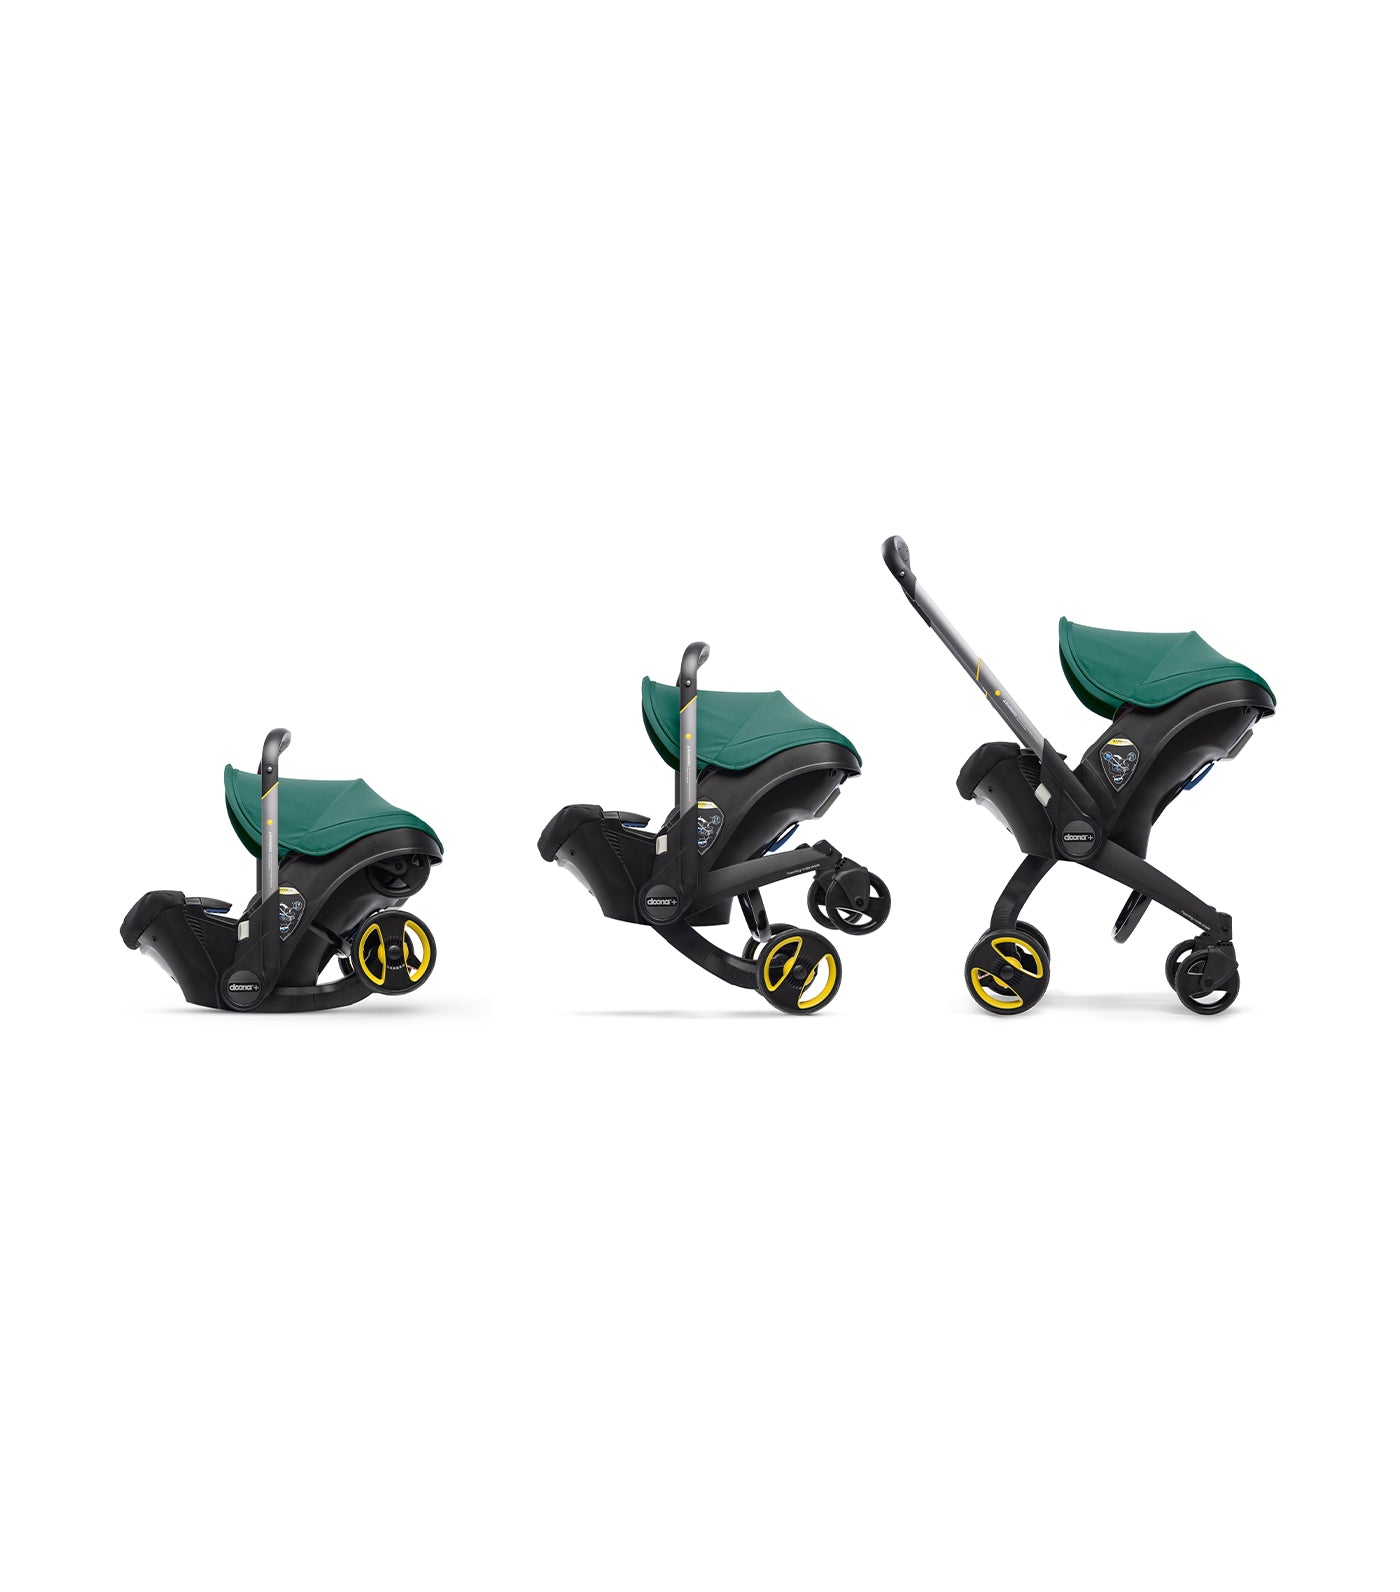 doona racing green infant car seat & stroller